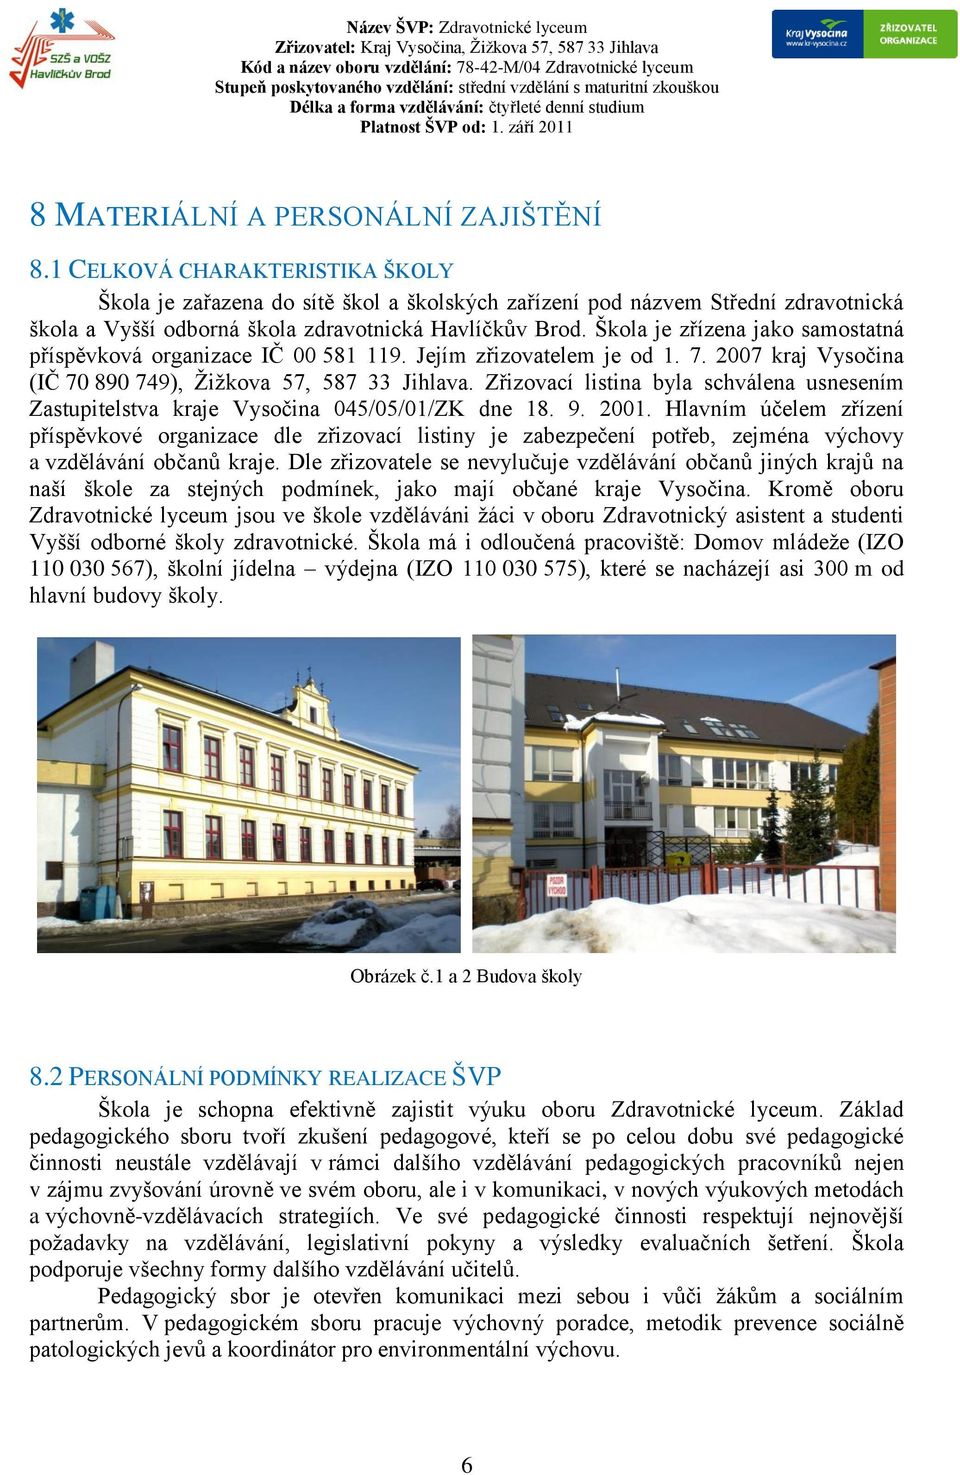 Škola je zřízena jako samostatná příspěvková organizace IČ 00 581 119. Jejím zřizovatelem je od 1. 7. 2007 kraj Vysočina (IČ 70 890 749), Žižkova 57, 587 33 Jihlava.